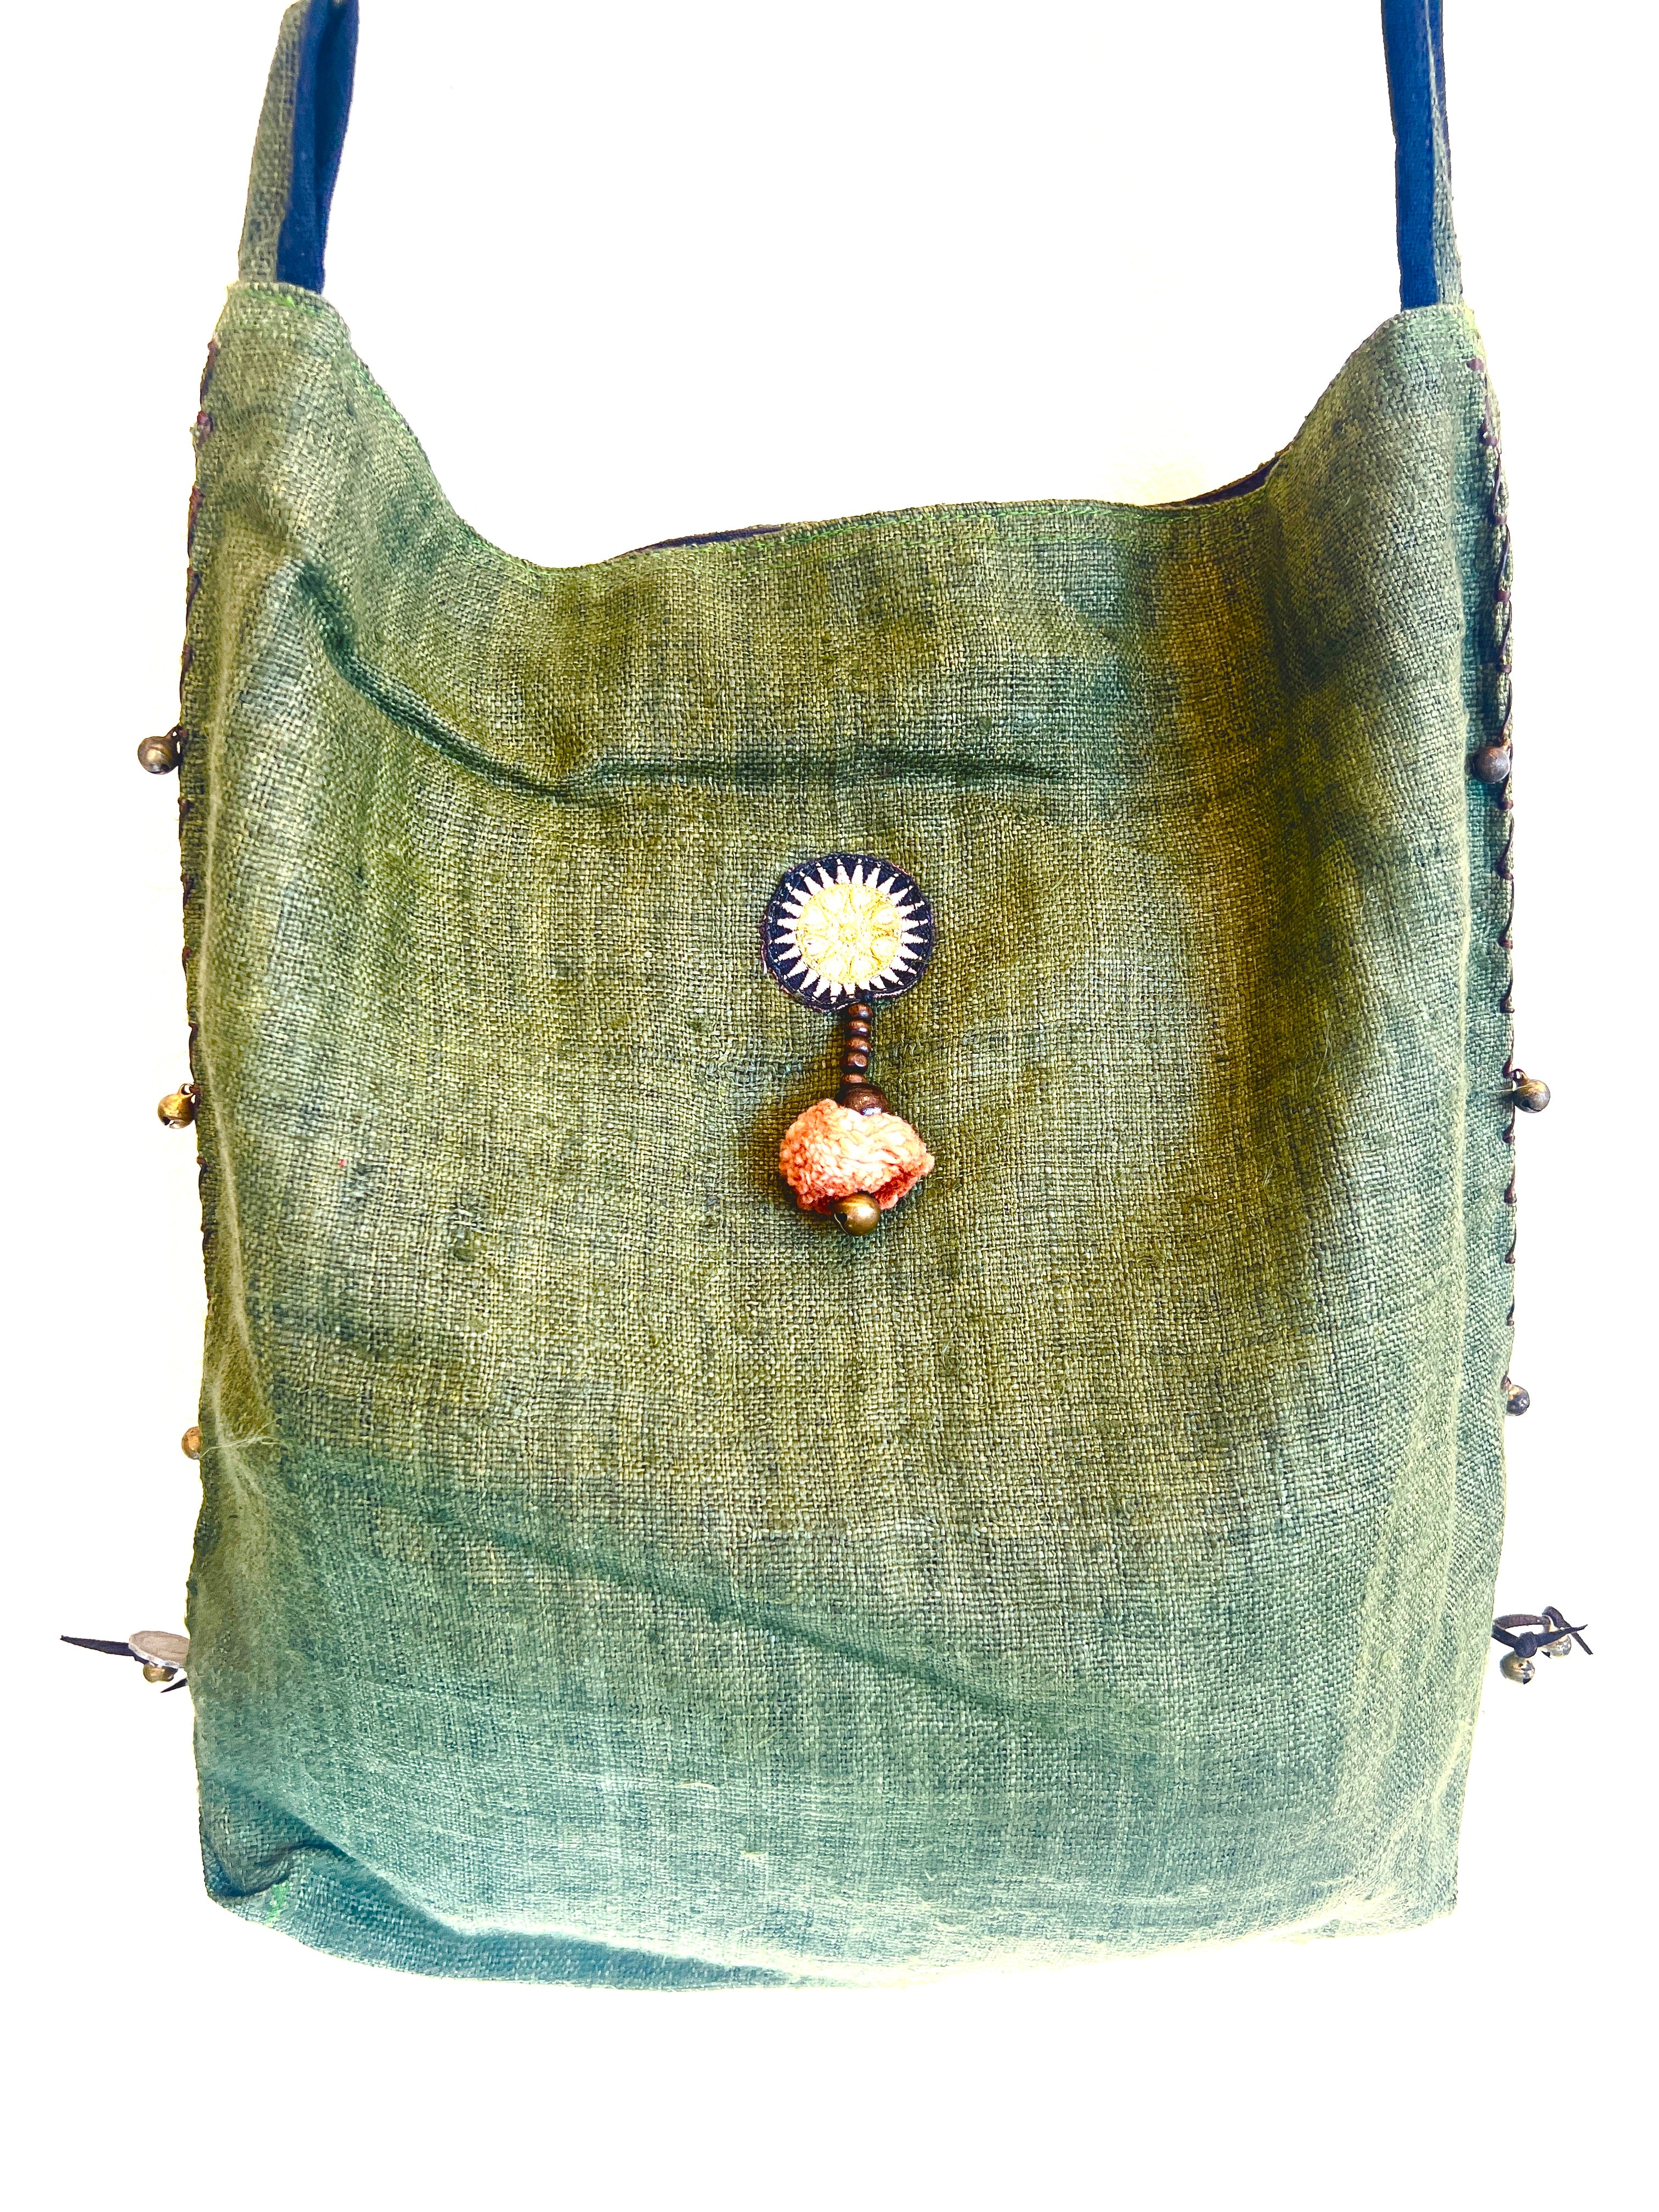 “Mekong” #5 Vintage Fabric Cross Body Bag